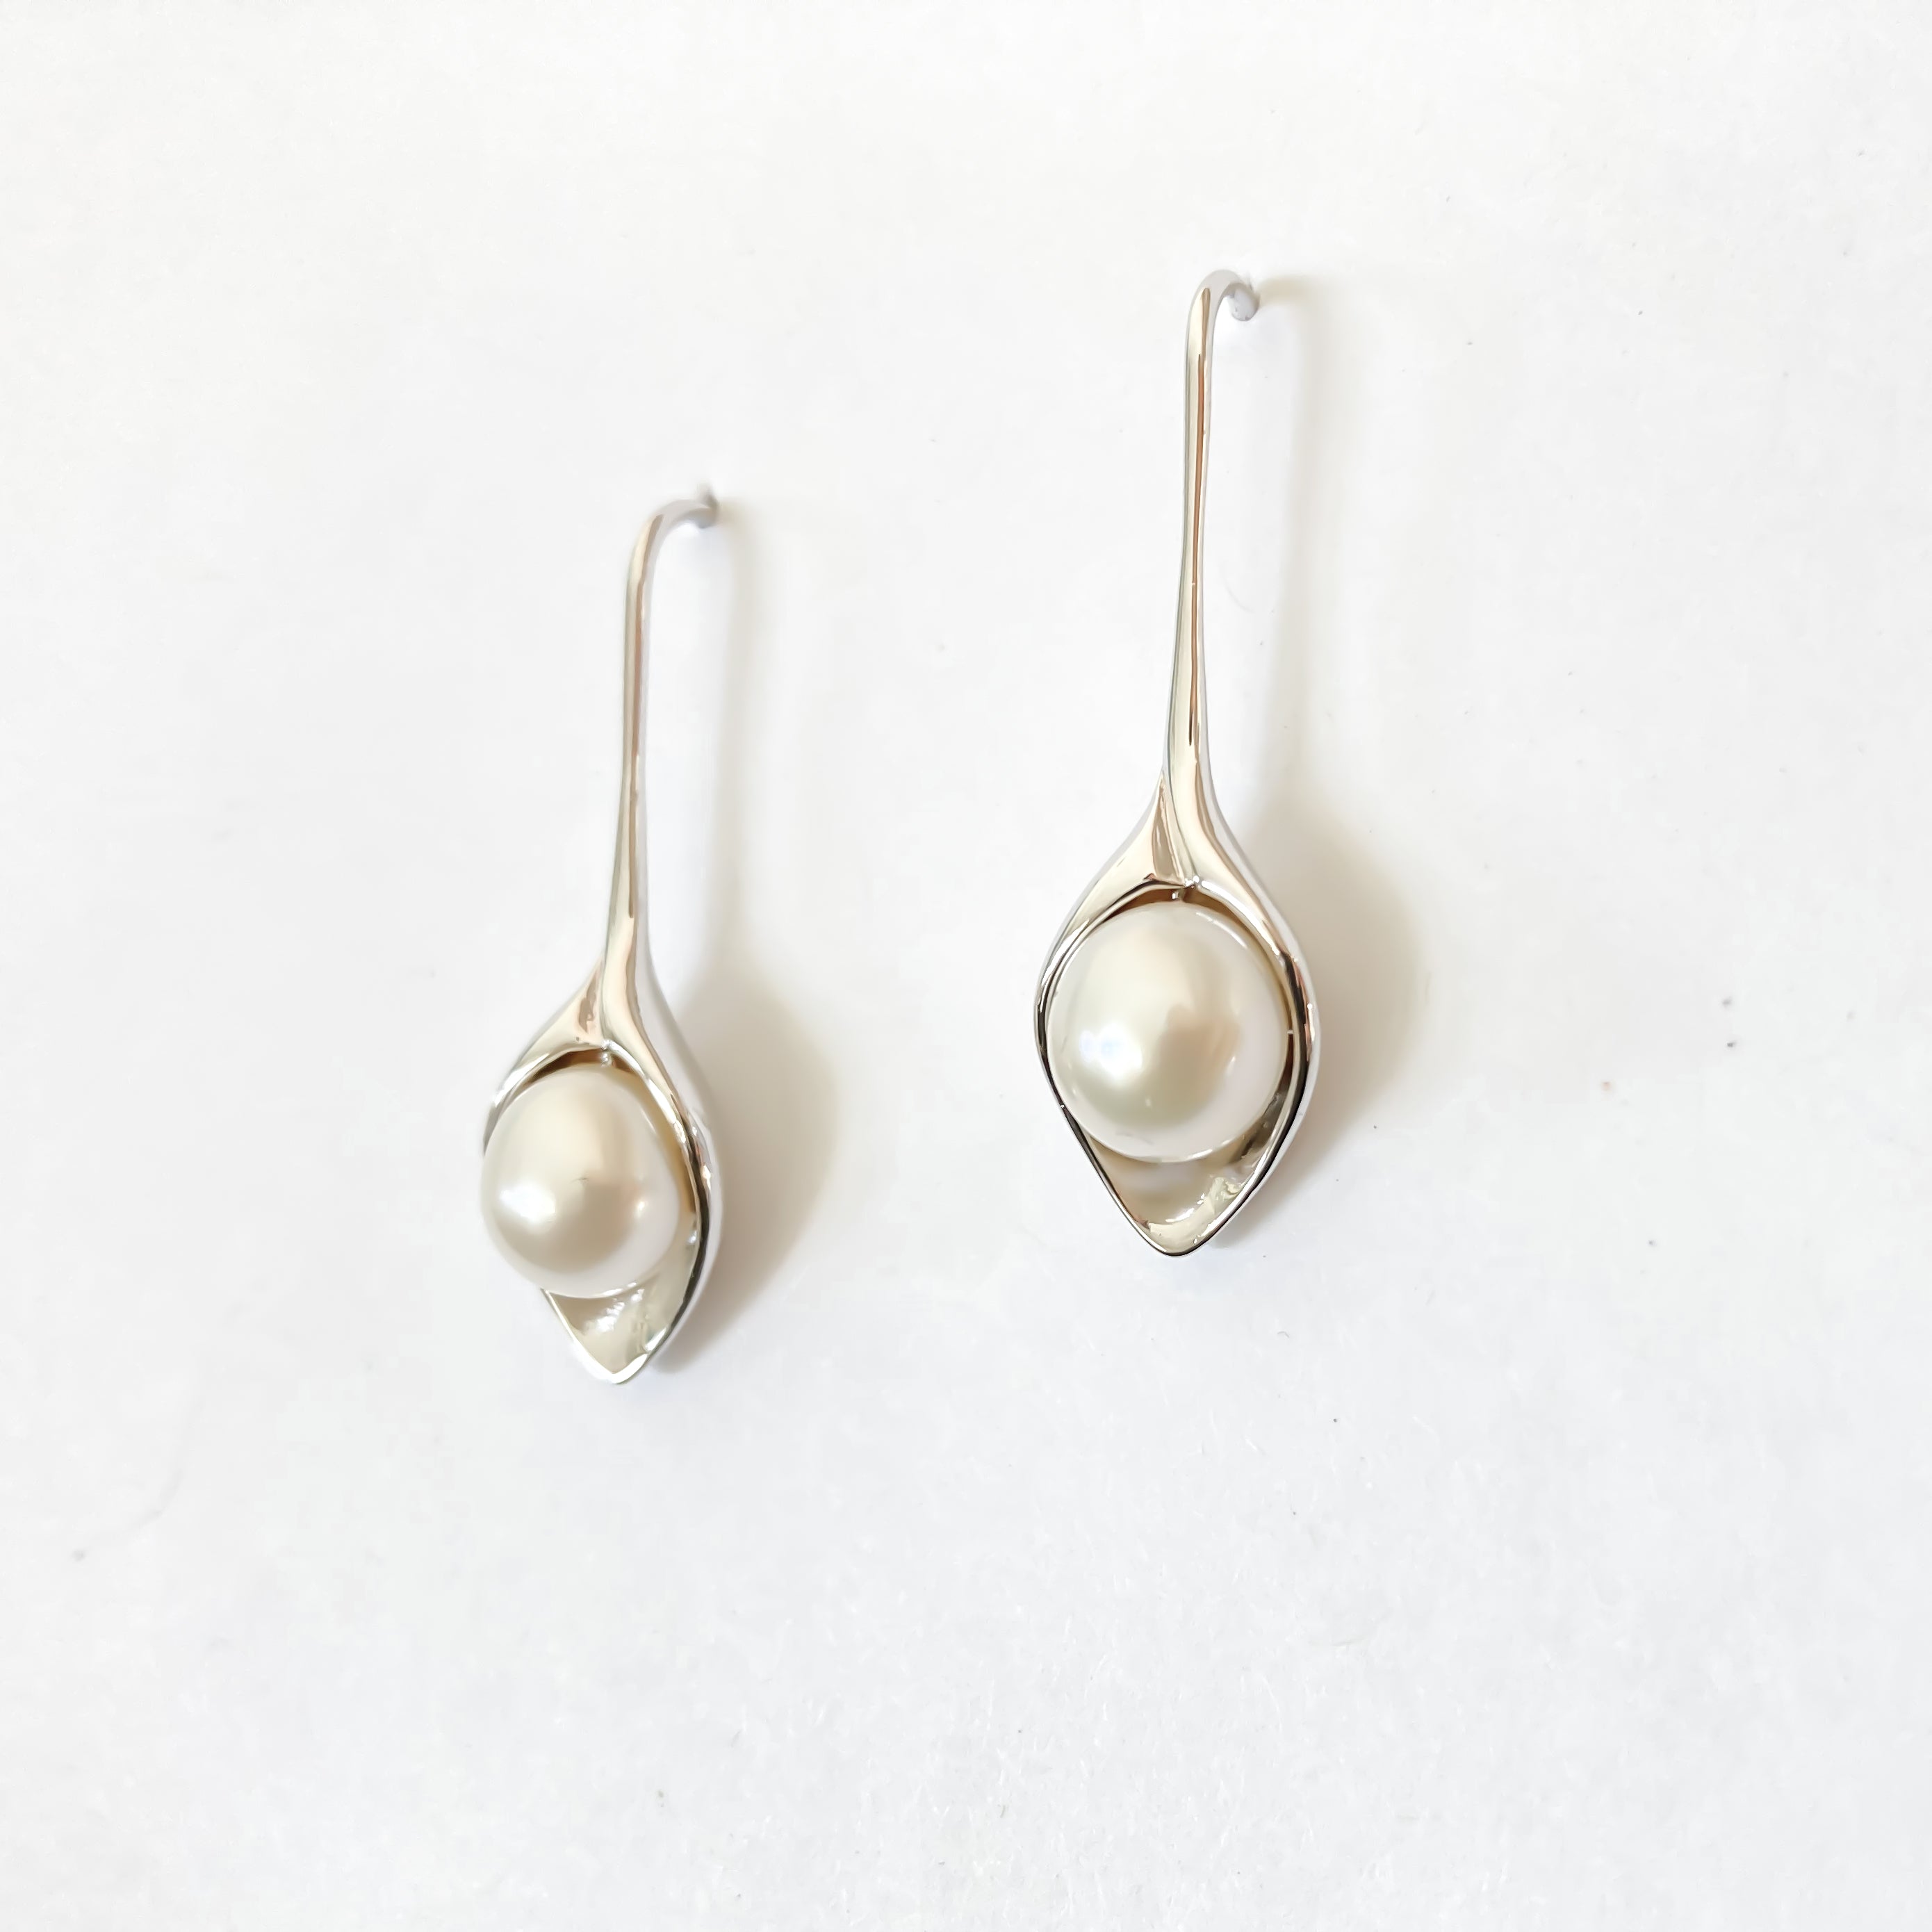 Hawaiian pearl earrings, Island jewelry, Hawaiian pearl jewelry, Hawaiian pearl drop earrings, handcrafted in Hawaii, Local Hawaii Jewelry, Hawaiian design earrings